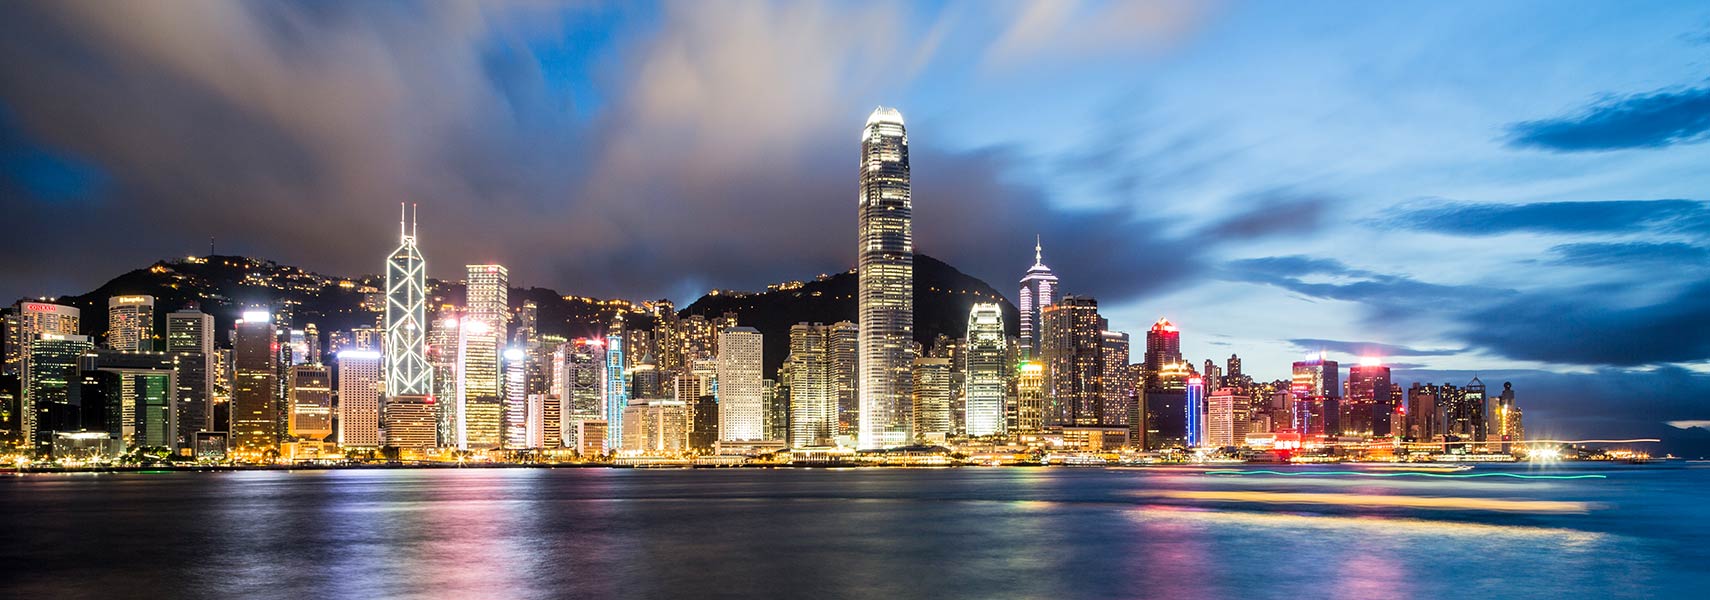 Chuyển phát nhanh Singpost Logistics đi Hồng Kông giá rẻ chất lượng